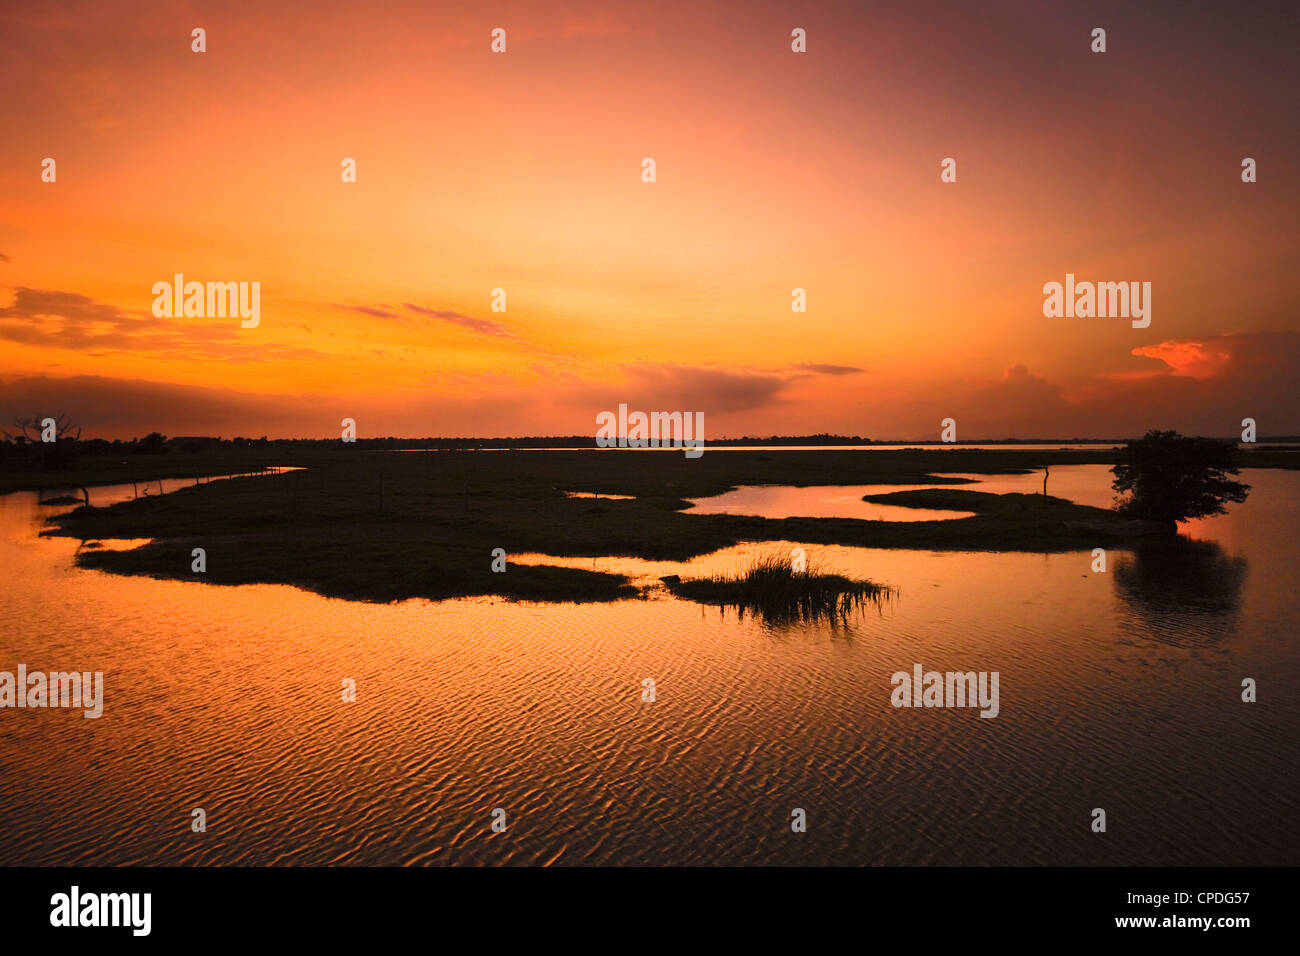 Lagune d'Arugam au coucher du soleil, un bon de faune de Pottuvil, Arugam Bay, province de l'Est, Asie, Sri Lanka Banque D'Images